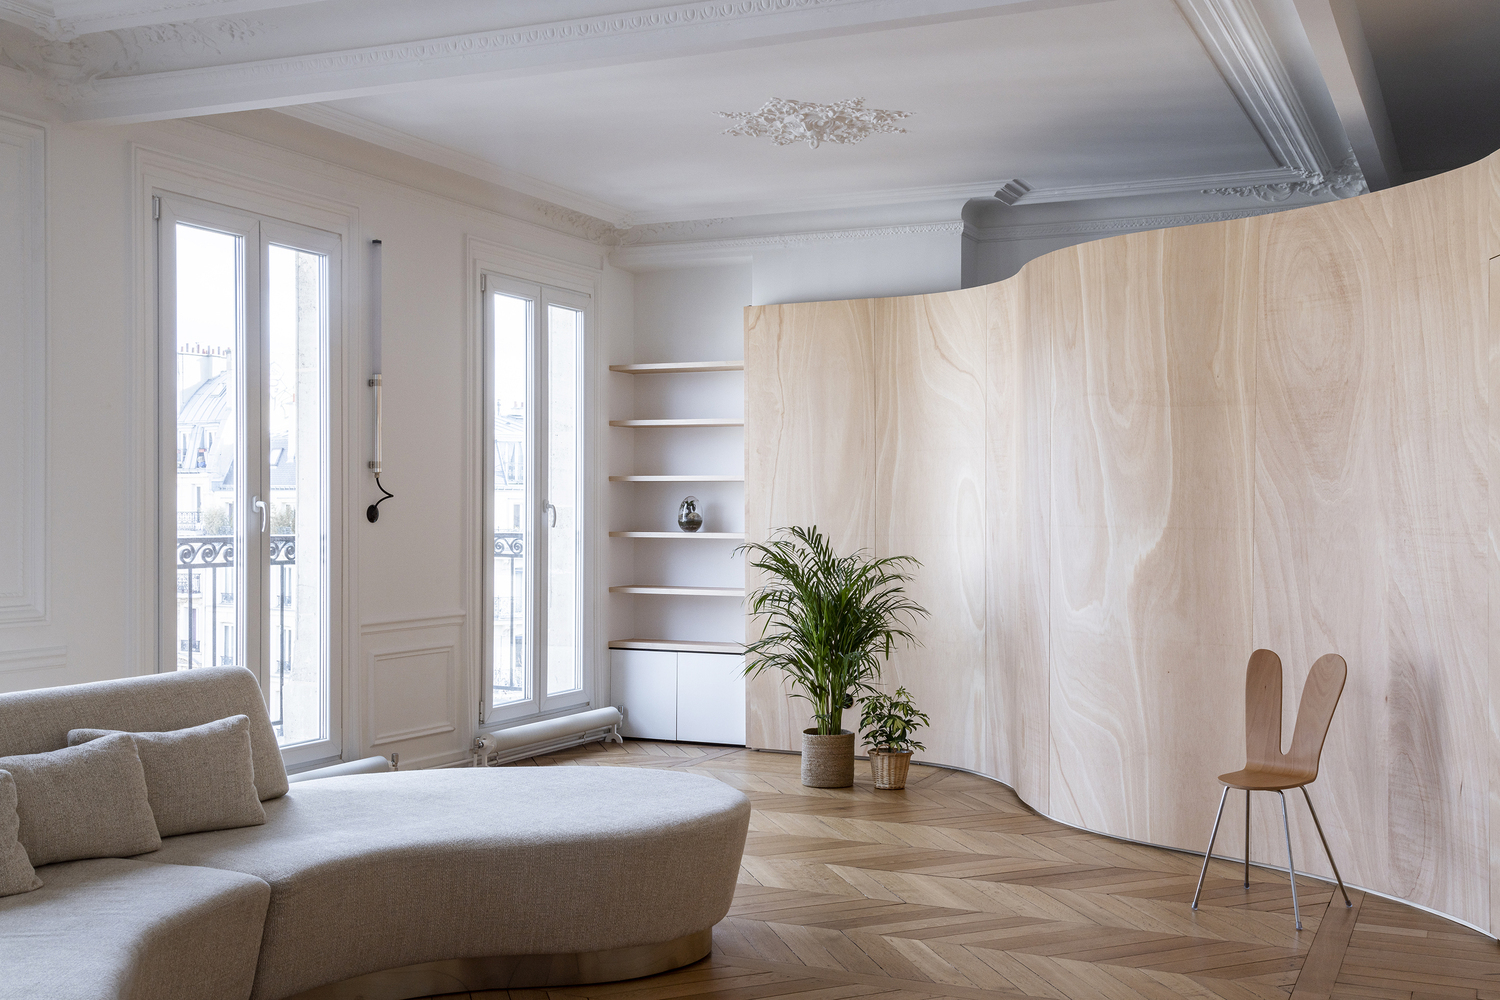 Tường lửng bằng gỗ uốn lượn mềm mại trong căn hộ nhỏ.